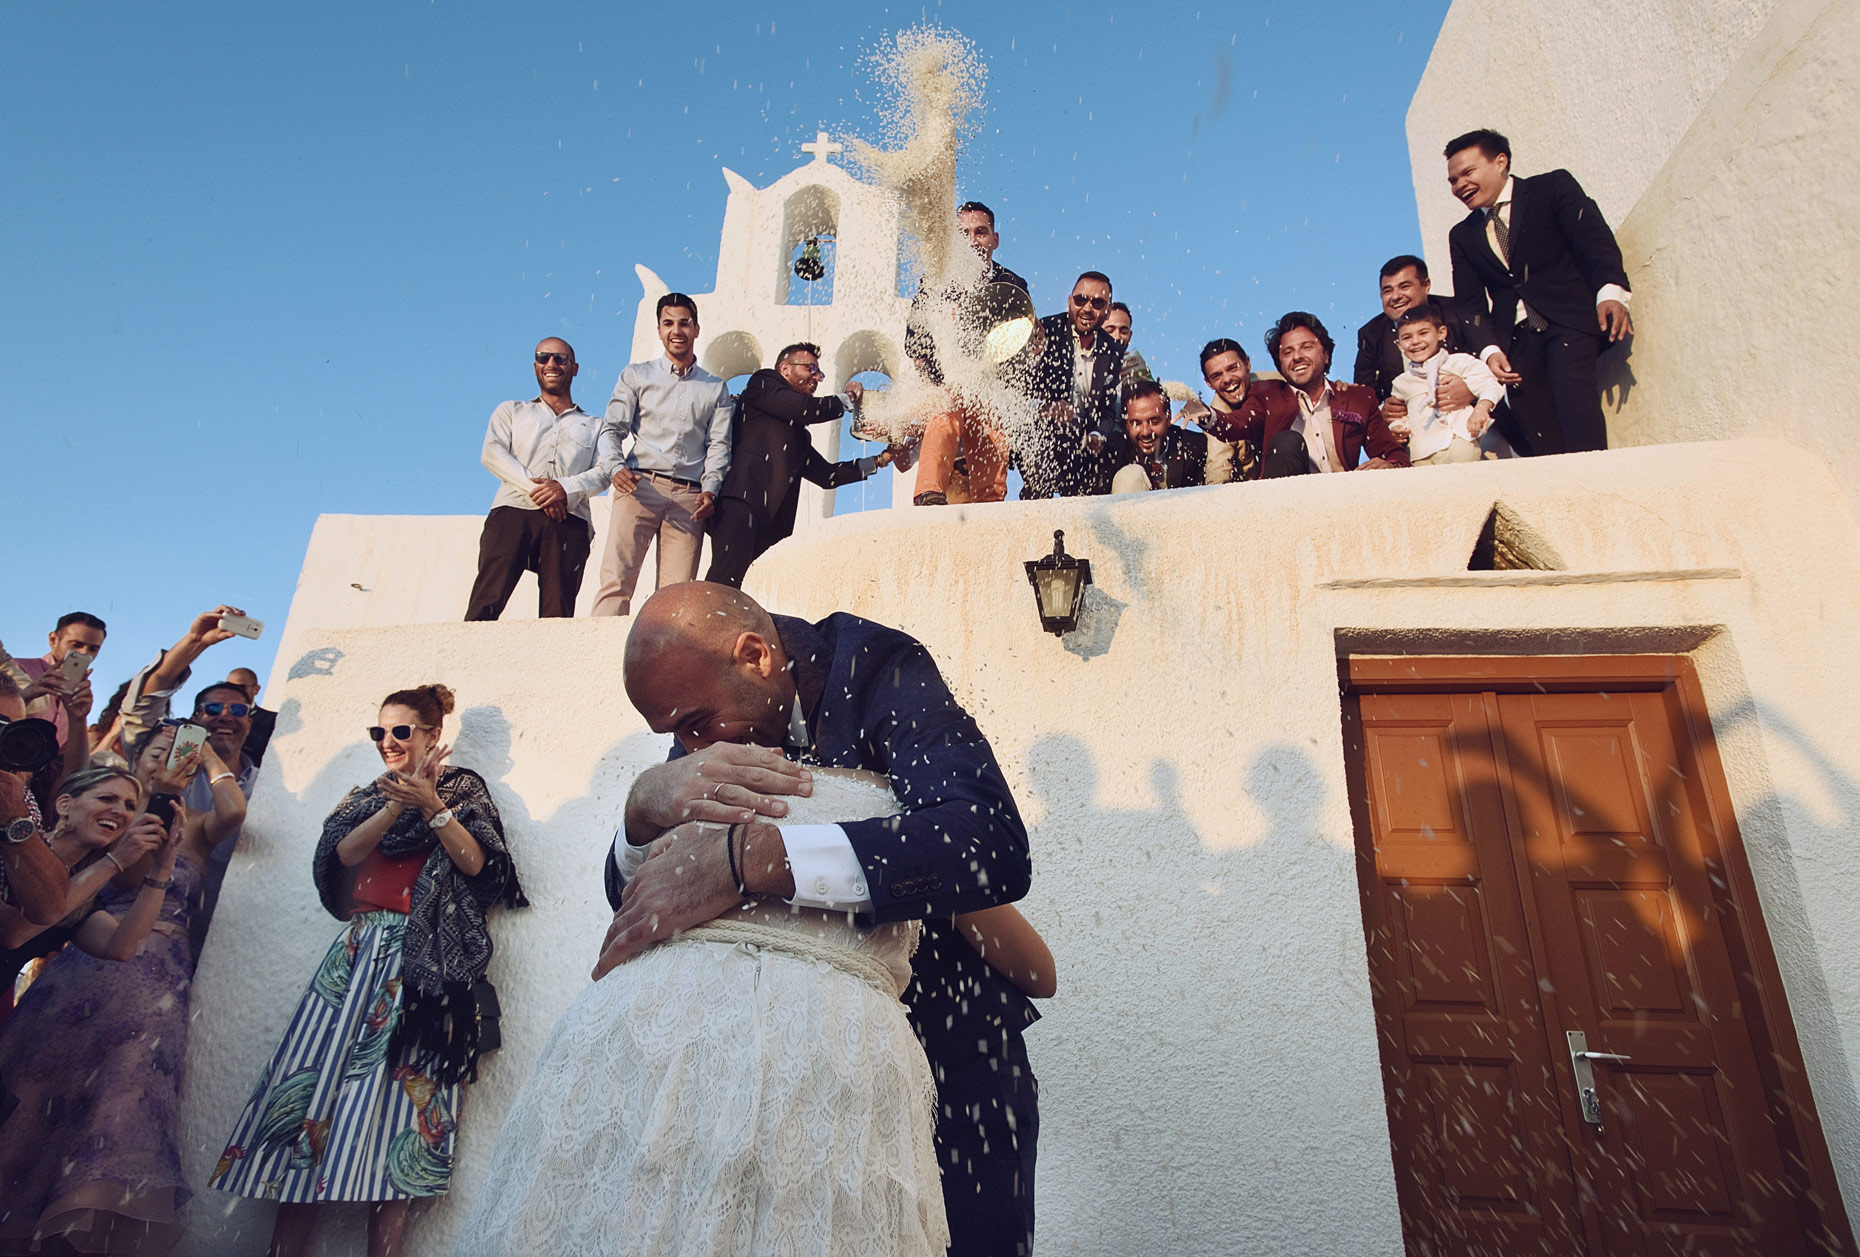 greek wedding ceremony in Ios island | γαμος στην Ιο